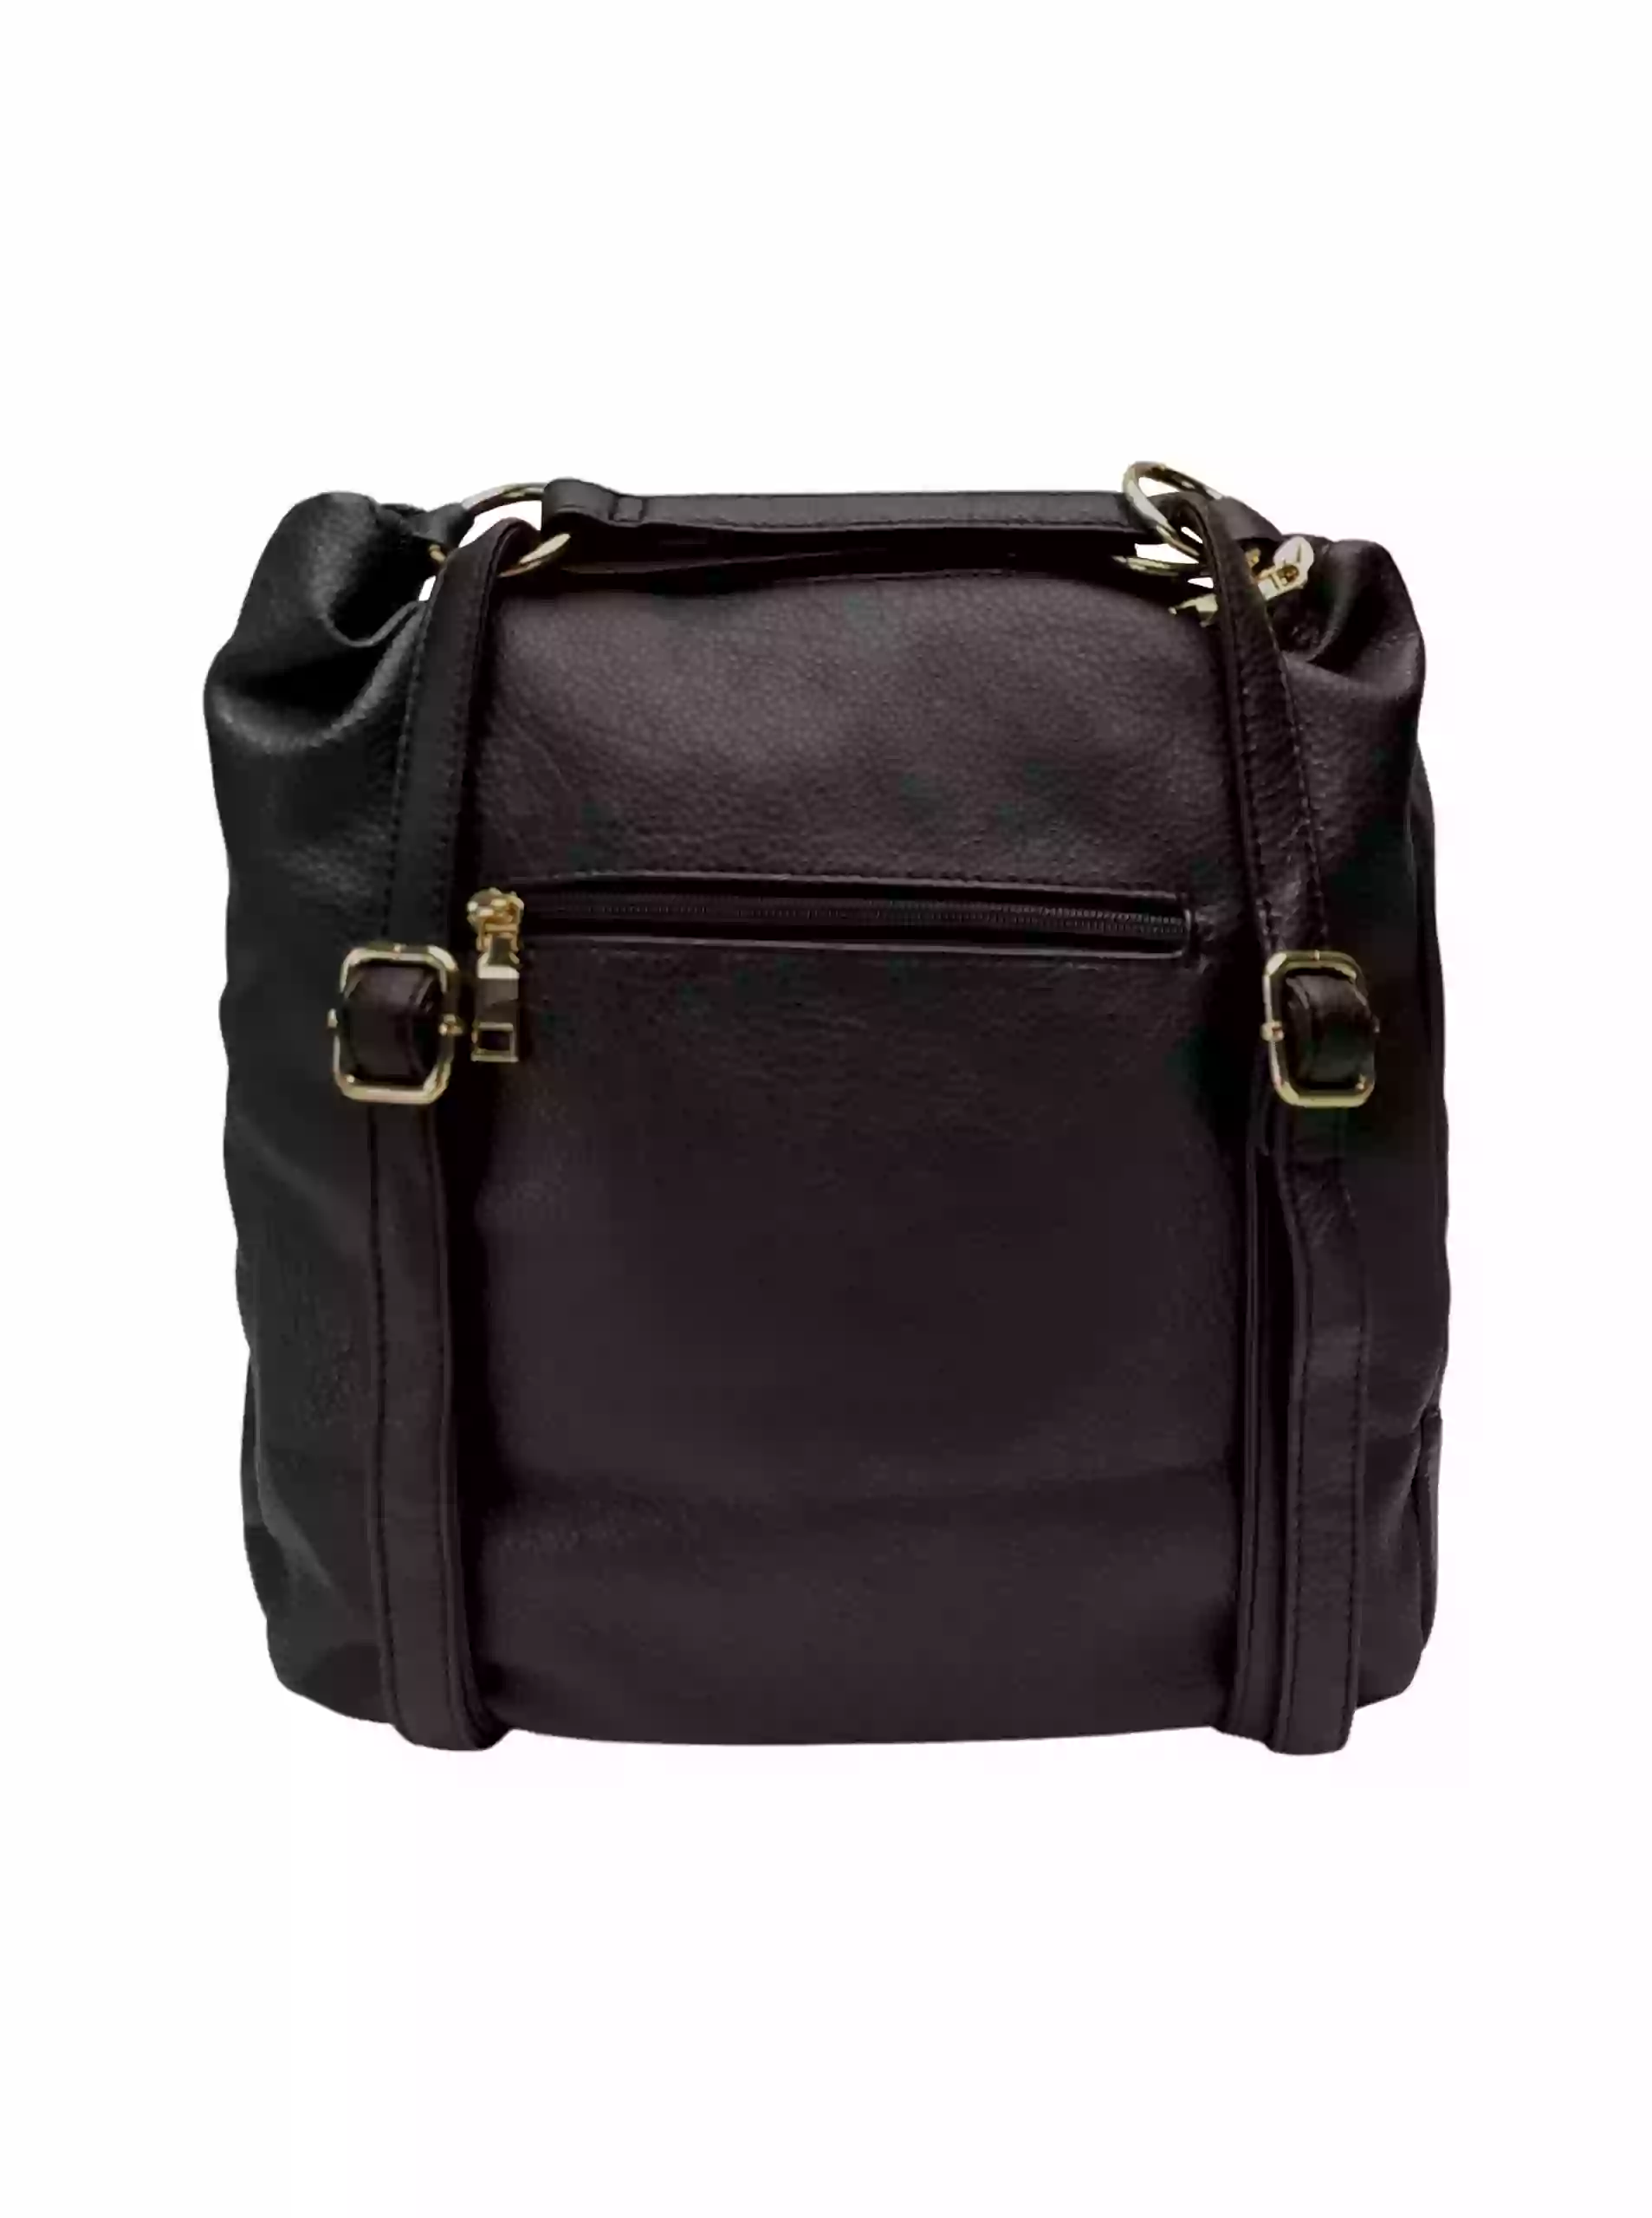 Velký černý kabelko-batoh 2v1 s kapsou, Int. Company, H23, zadní strana kabelko-batohu s popruhy